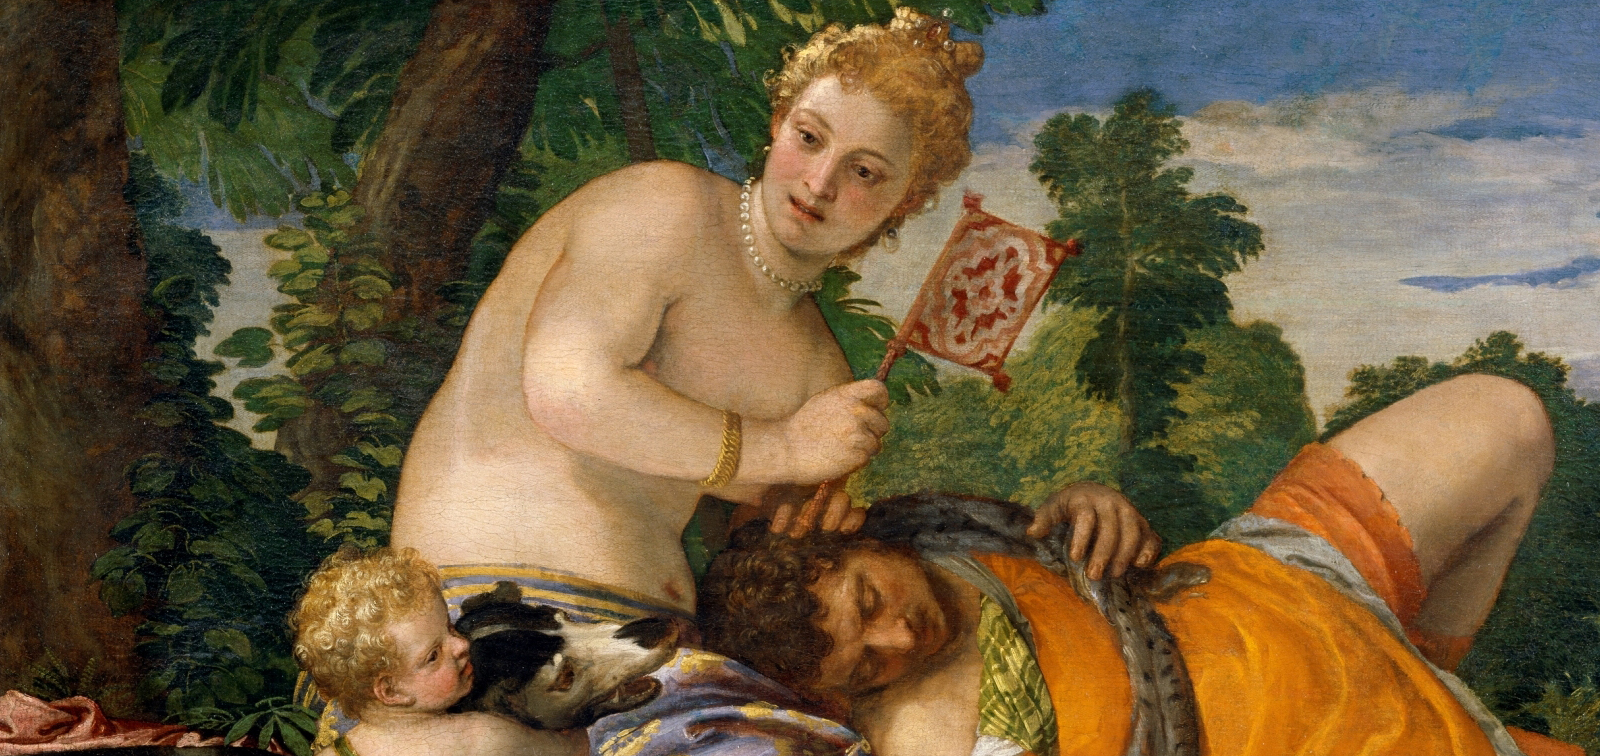 Una obra, un artista: <em>Venus y Adonis</em>, de Veronés